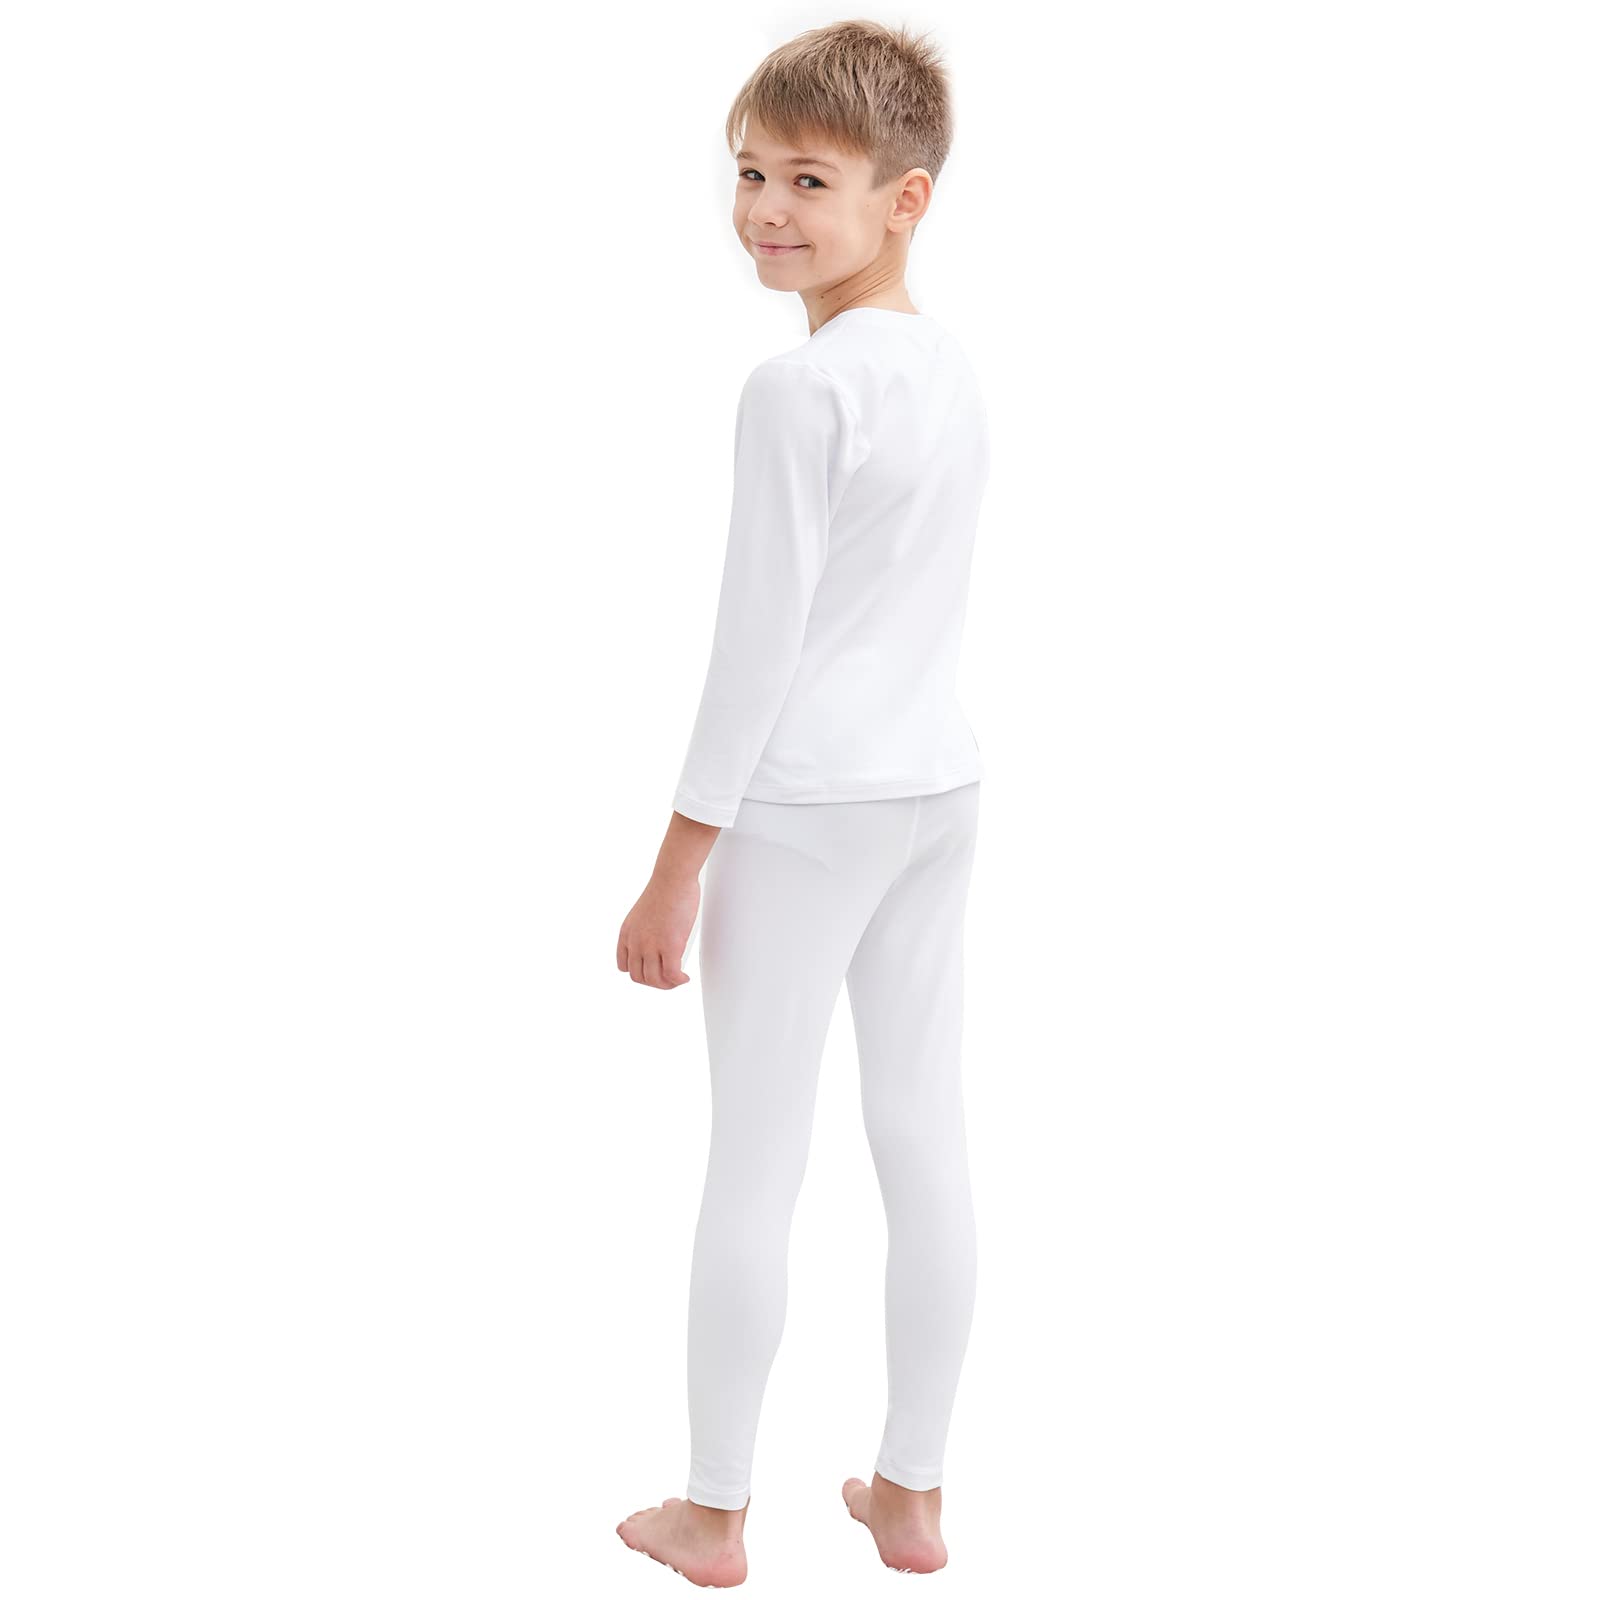 Buy HEROBIKER Thermal Underwear Boys Ultra Soft Fleece Lined Kids